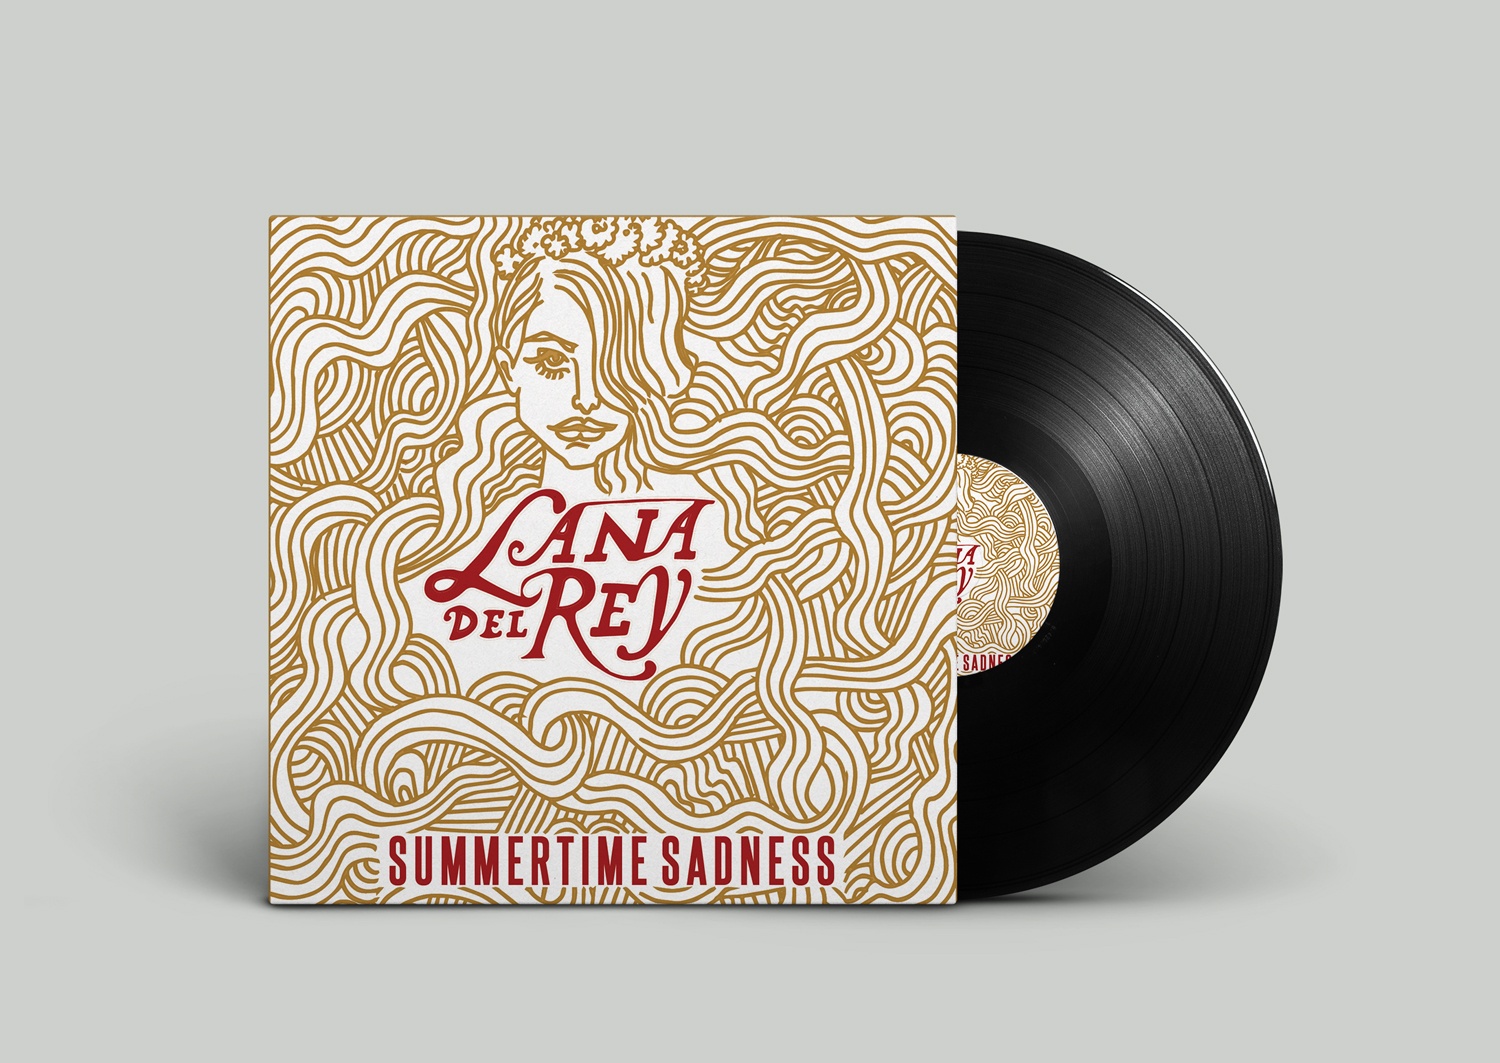 Lana-Album-cover-forweb